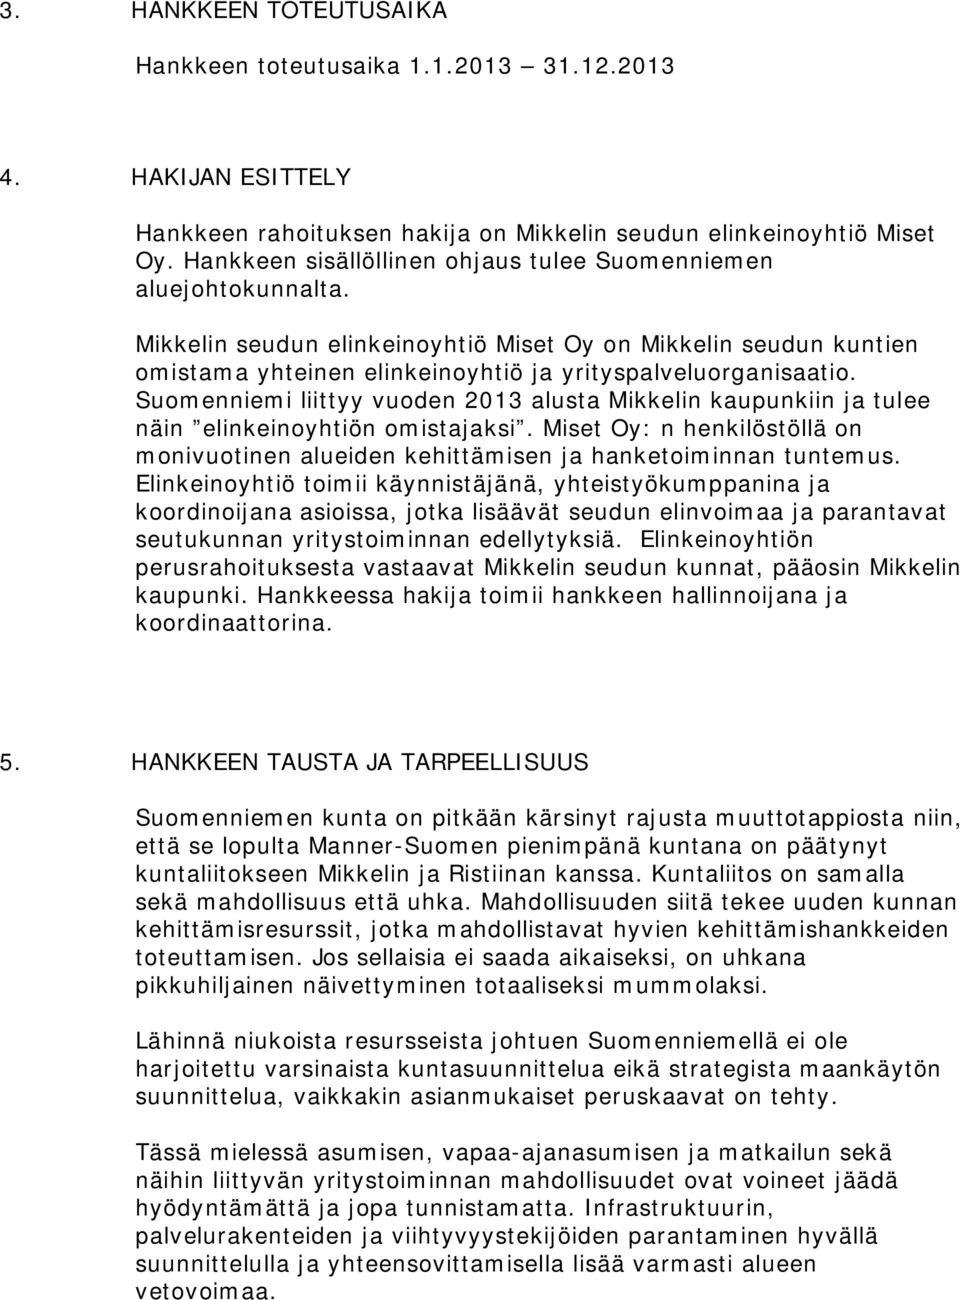 Suomenniemi liittyy vuoden 2013 alusta Mikkelin kaupunkiin ja tulee näin elinkeinoyhtiön omistajaksi. Miset Oy: n henkilöstöllä on monivuotinen alueiden kehittämisen ja hanketoiminnan tuntemus.